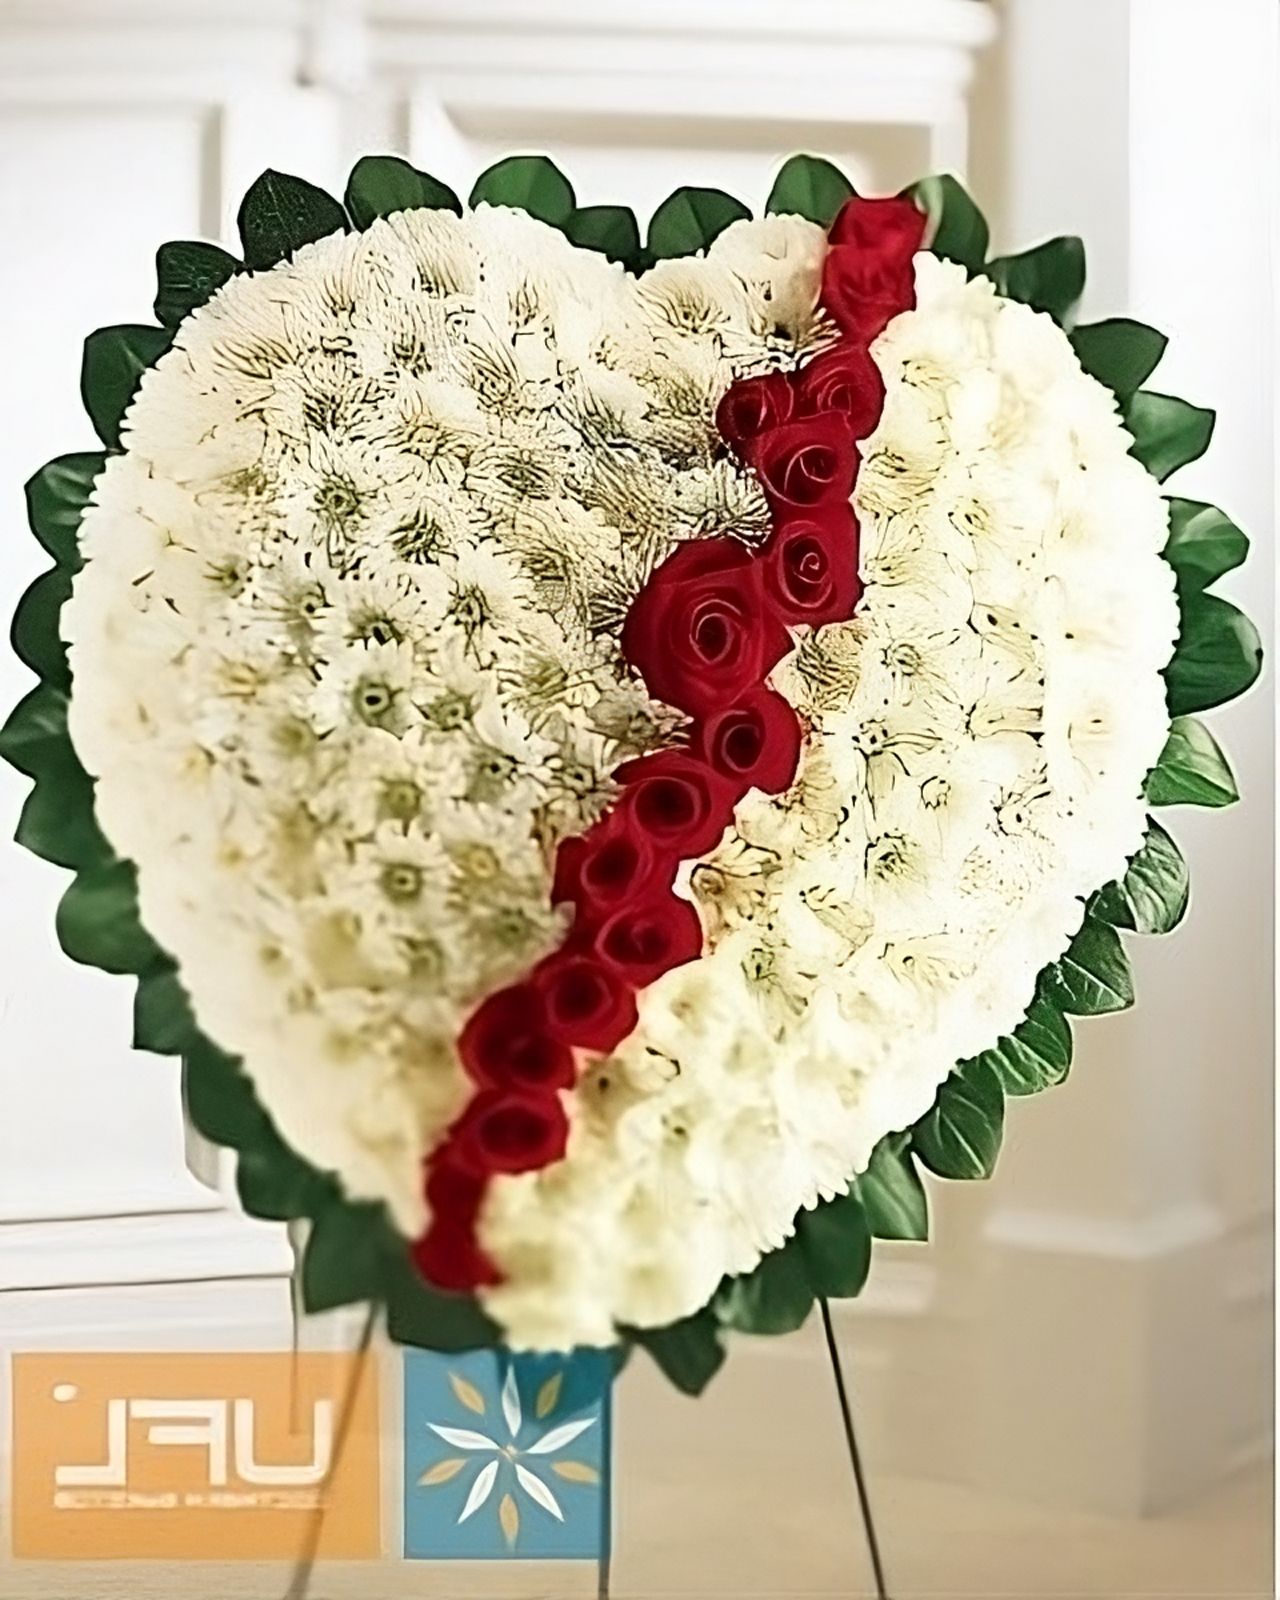 Ritual arrangement of flowers in a heart shape Lugansk